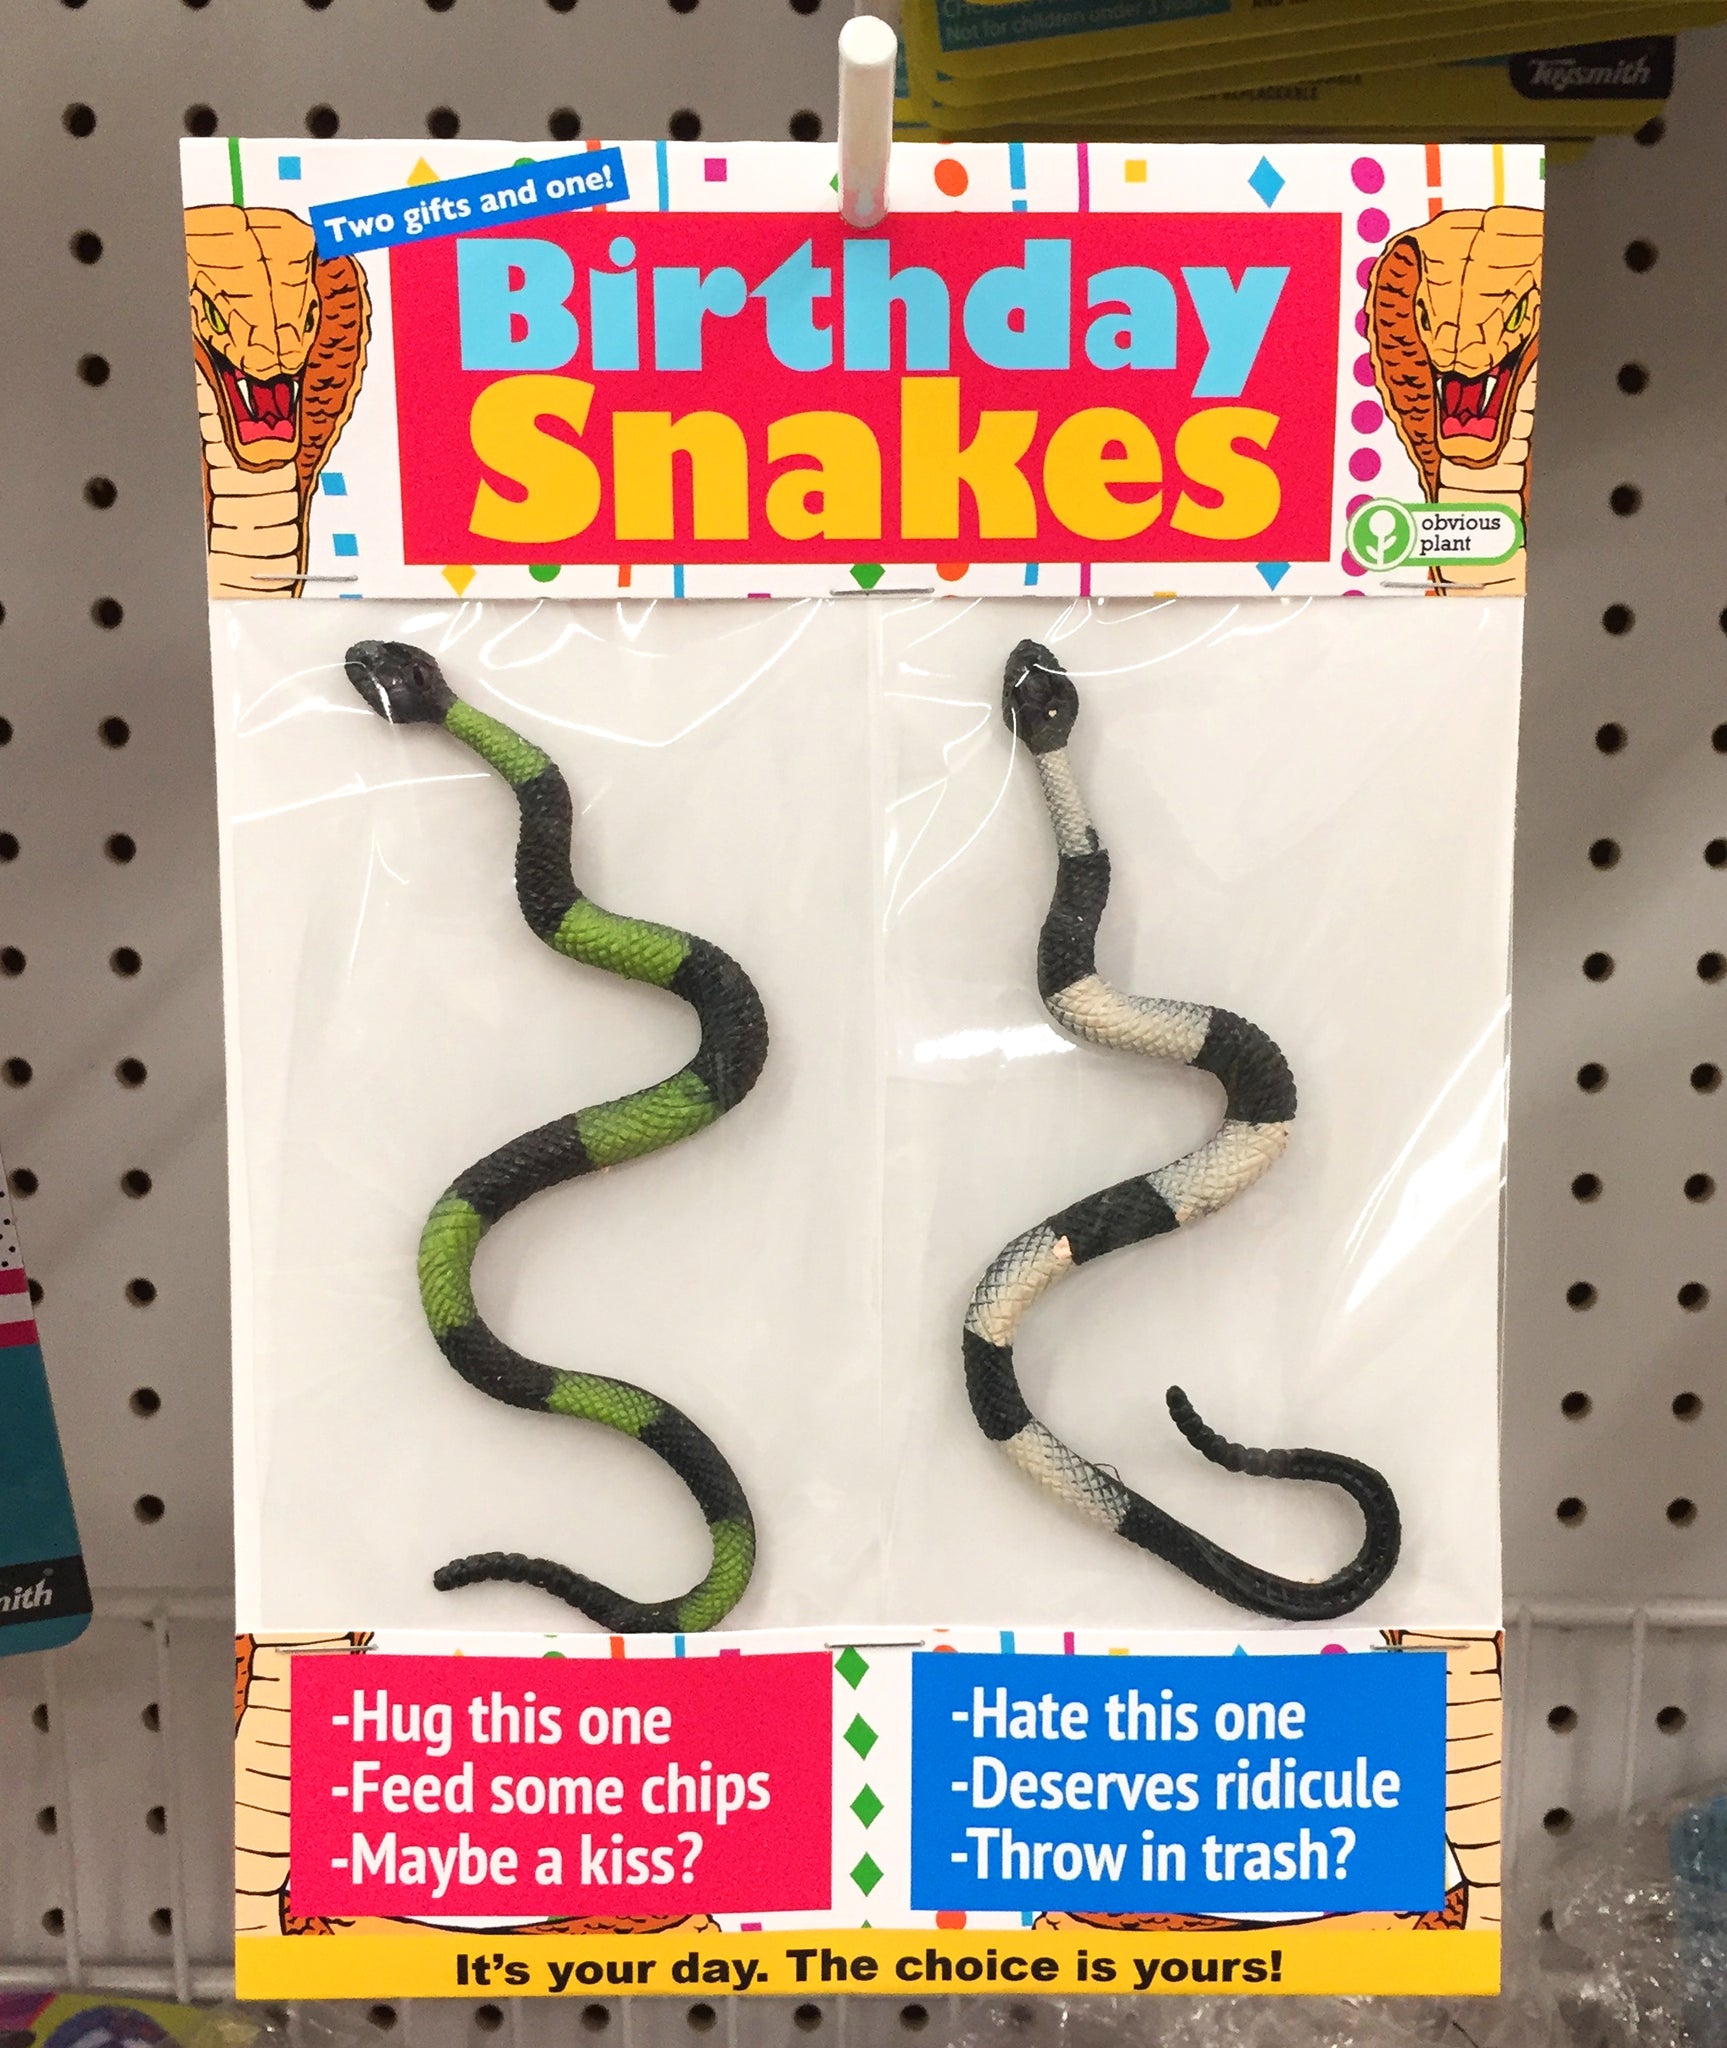 Birthday Snakes